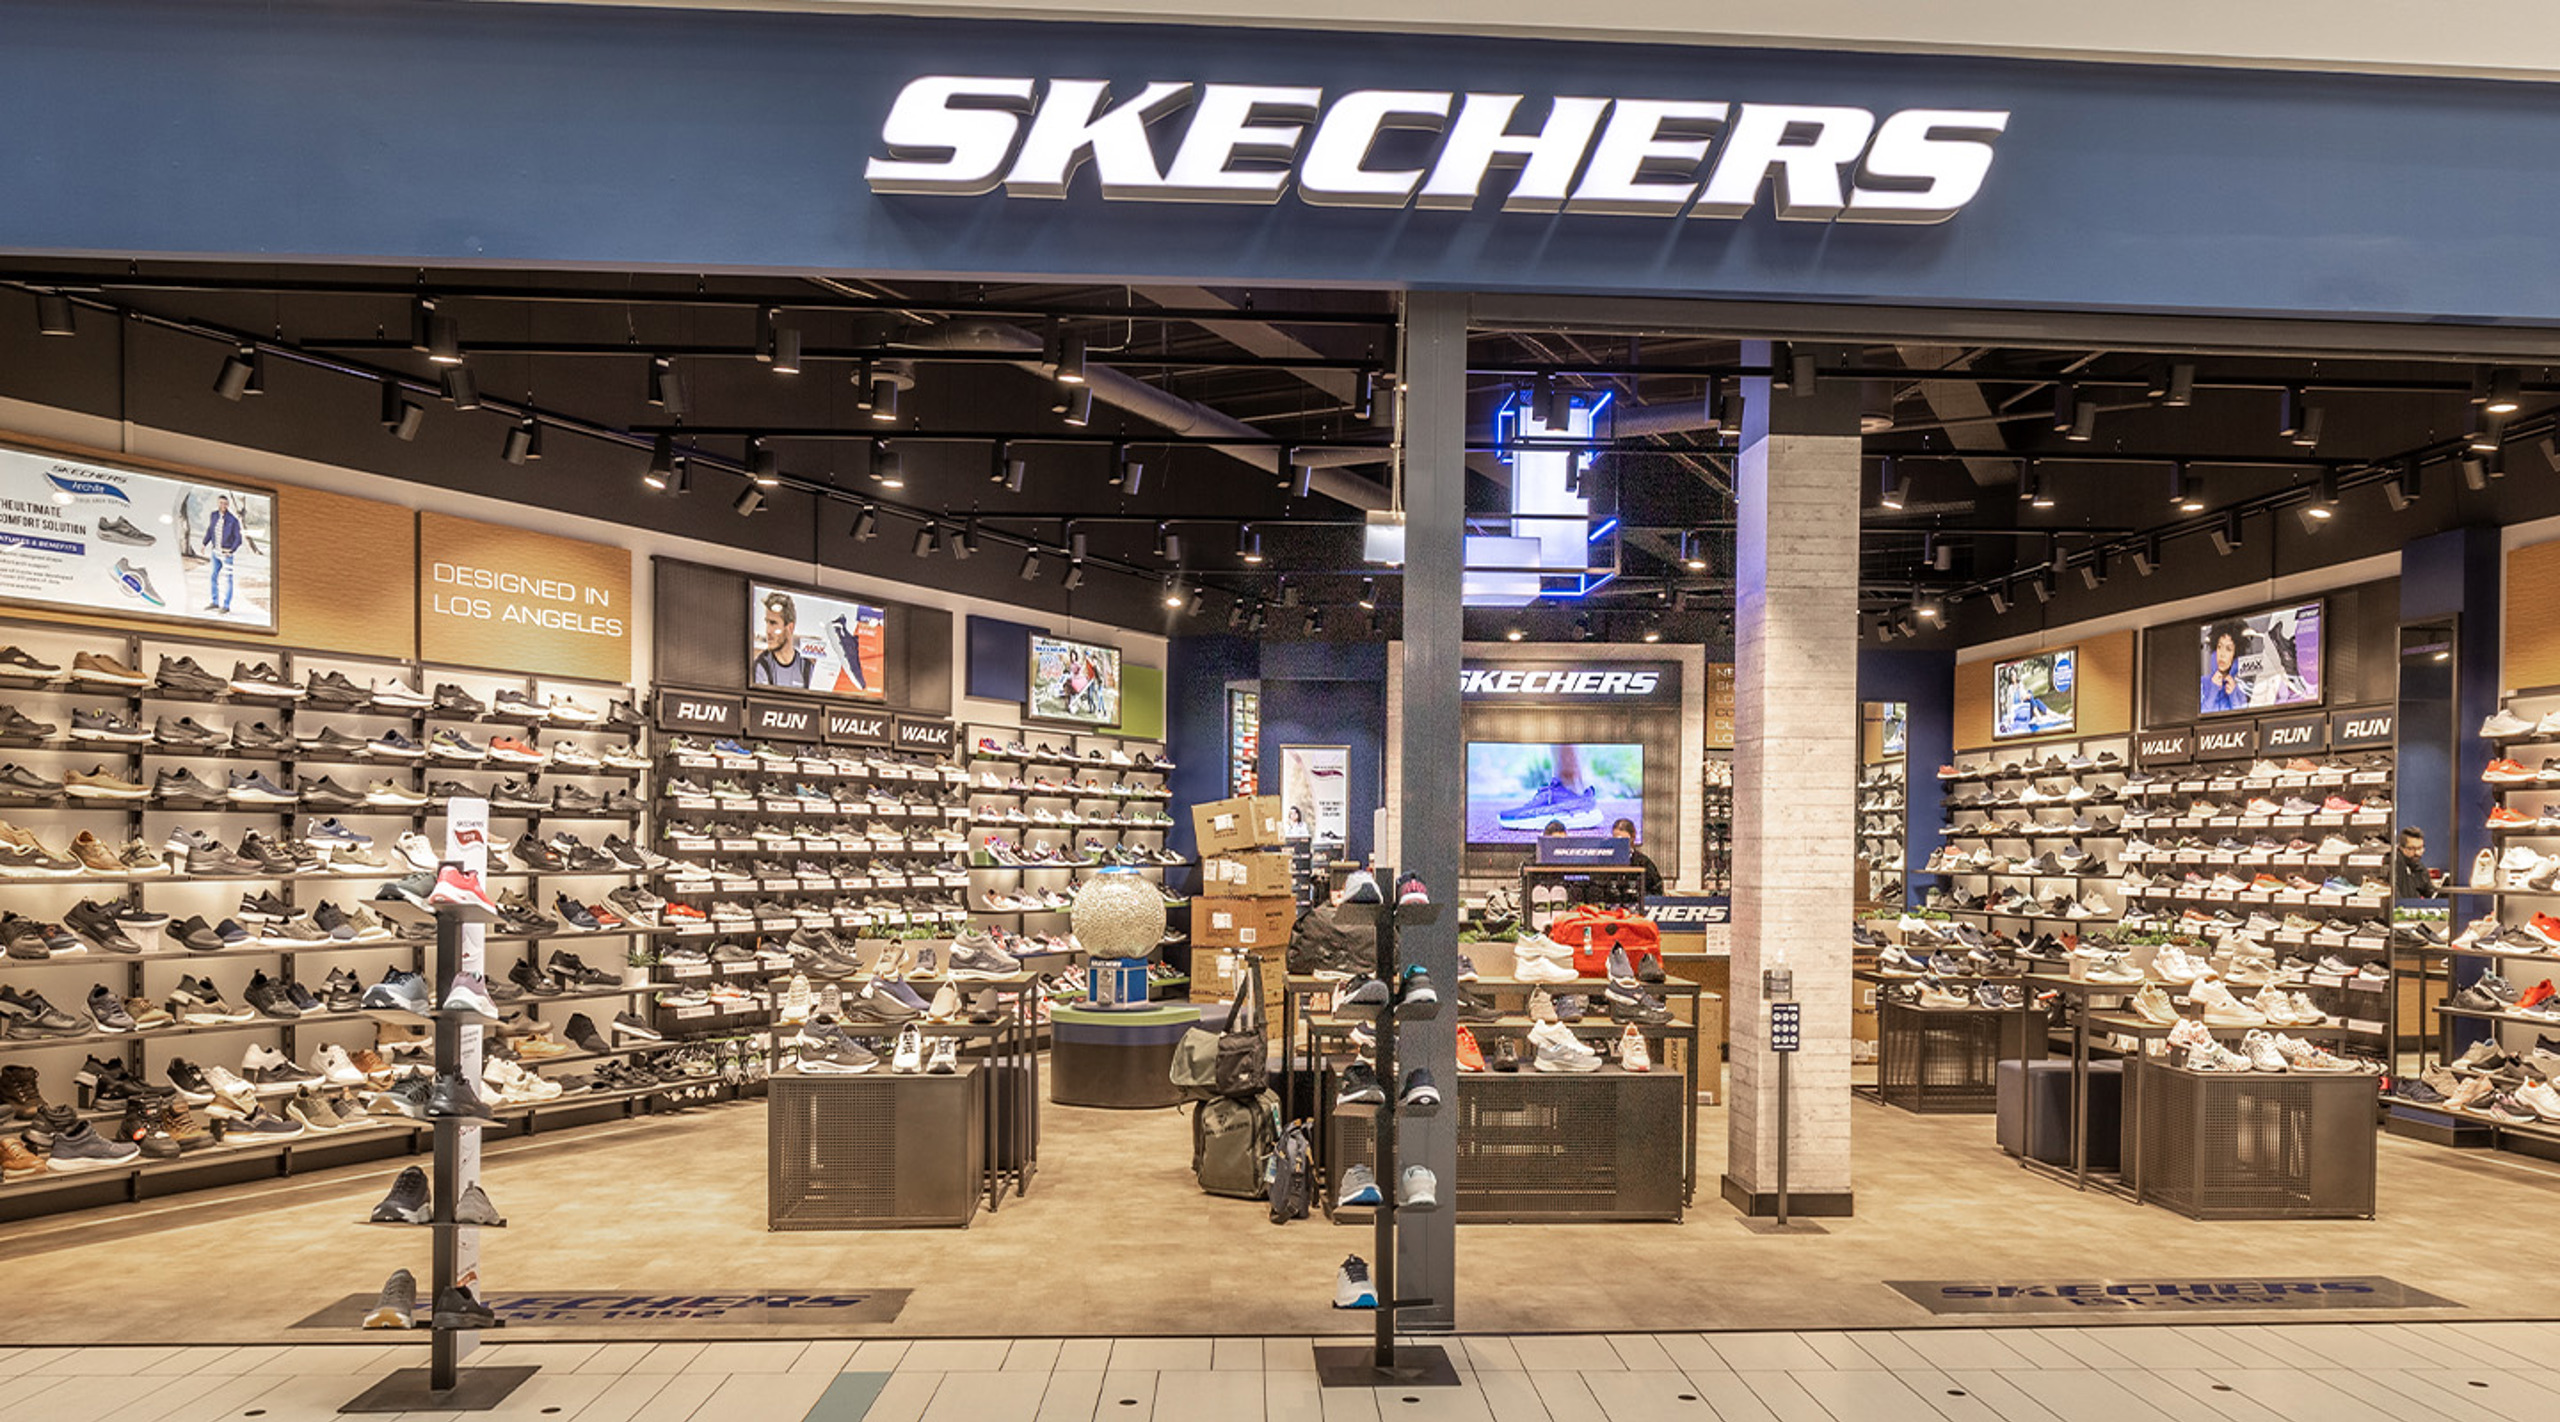 Skechers - Køb gode og sko hos os - WAVES